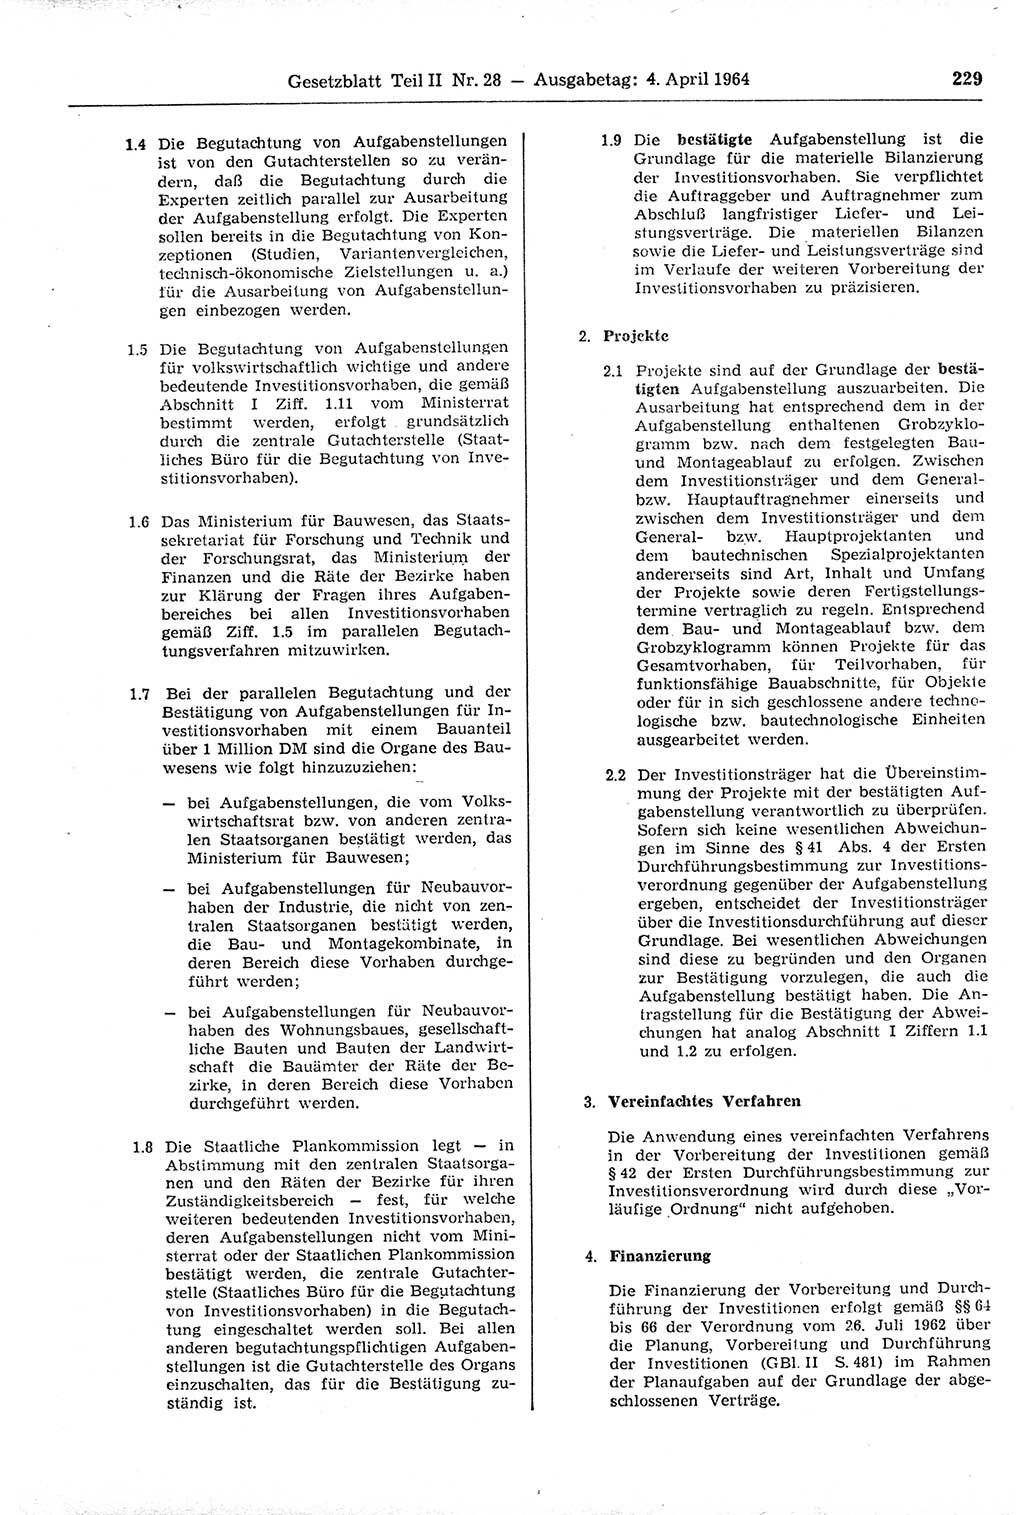 Gesetzblatt (GBl.) der Deutschen Demokratischen Republik (DDR) Teil ⅠⅠ 1964, Seite 229 (GBl. DDR ⅠⅠ 1964, S. 229)